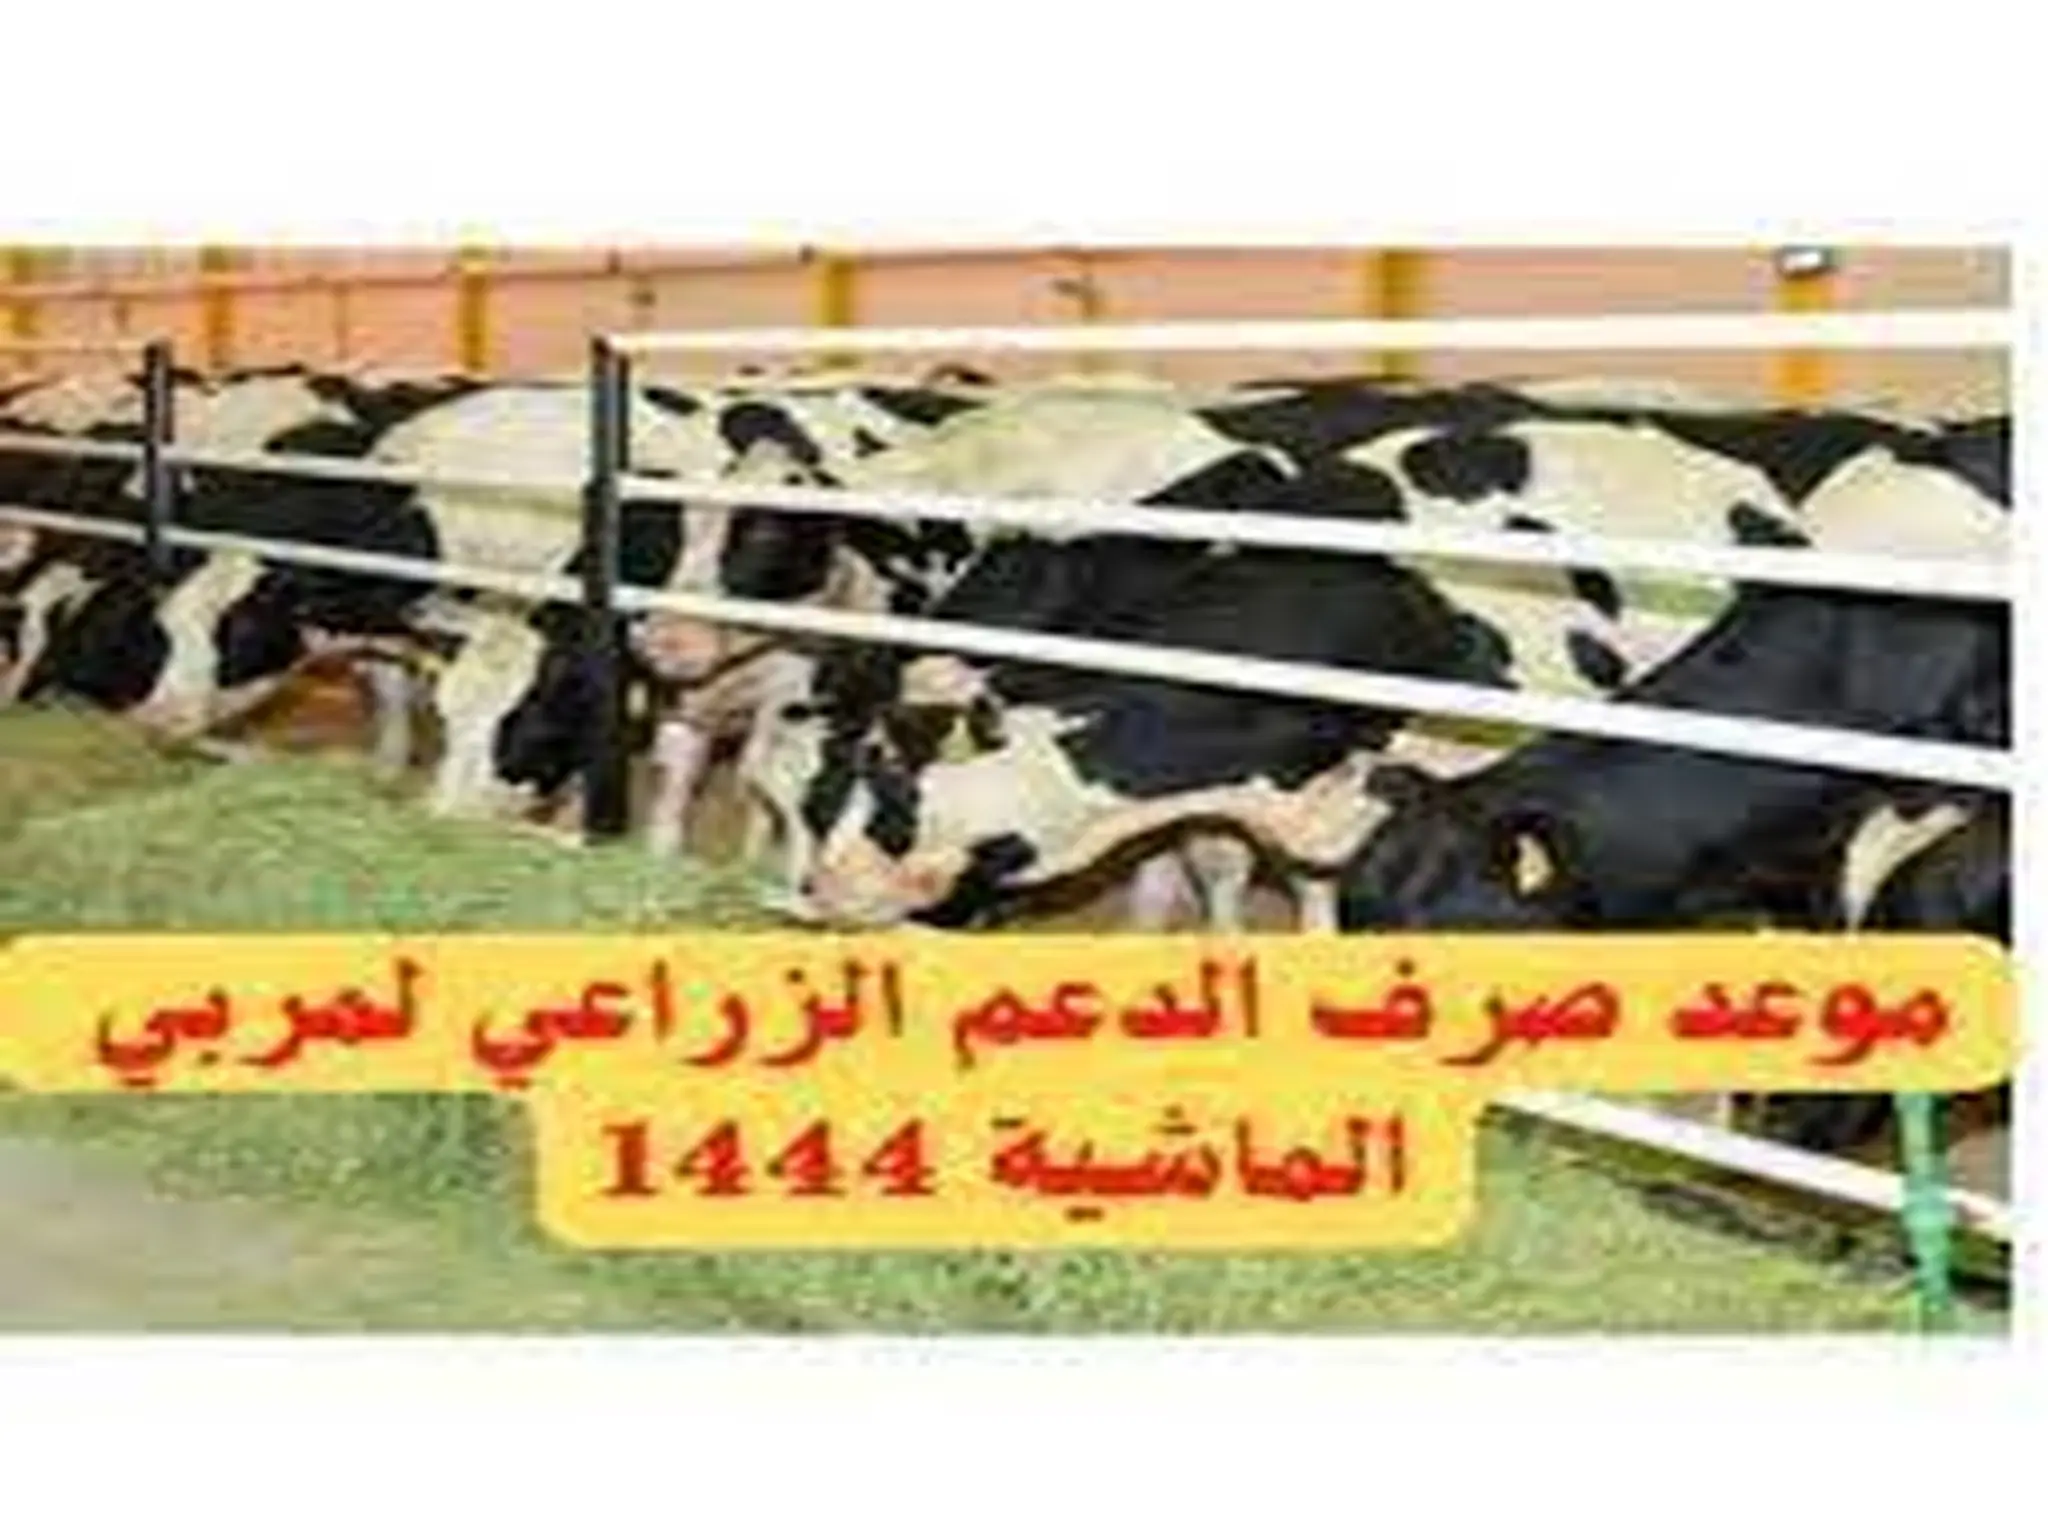 موعد صرف إعانة مربي الماشية 1444-2022